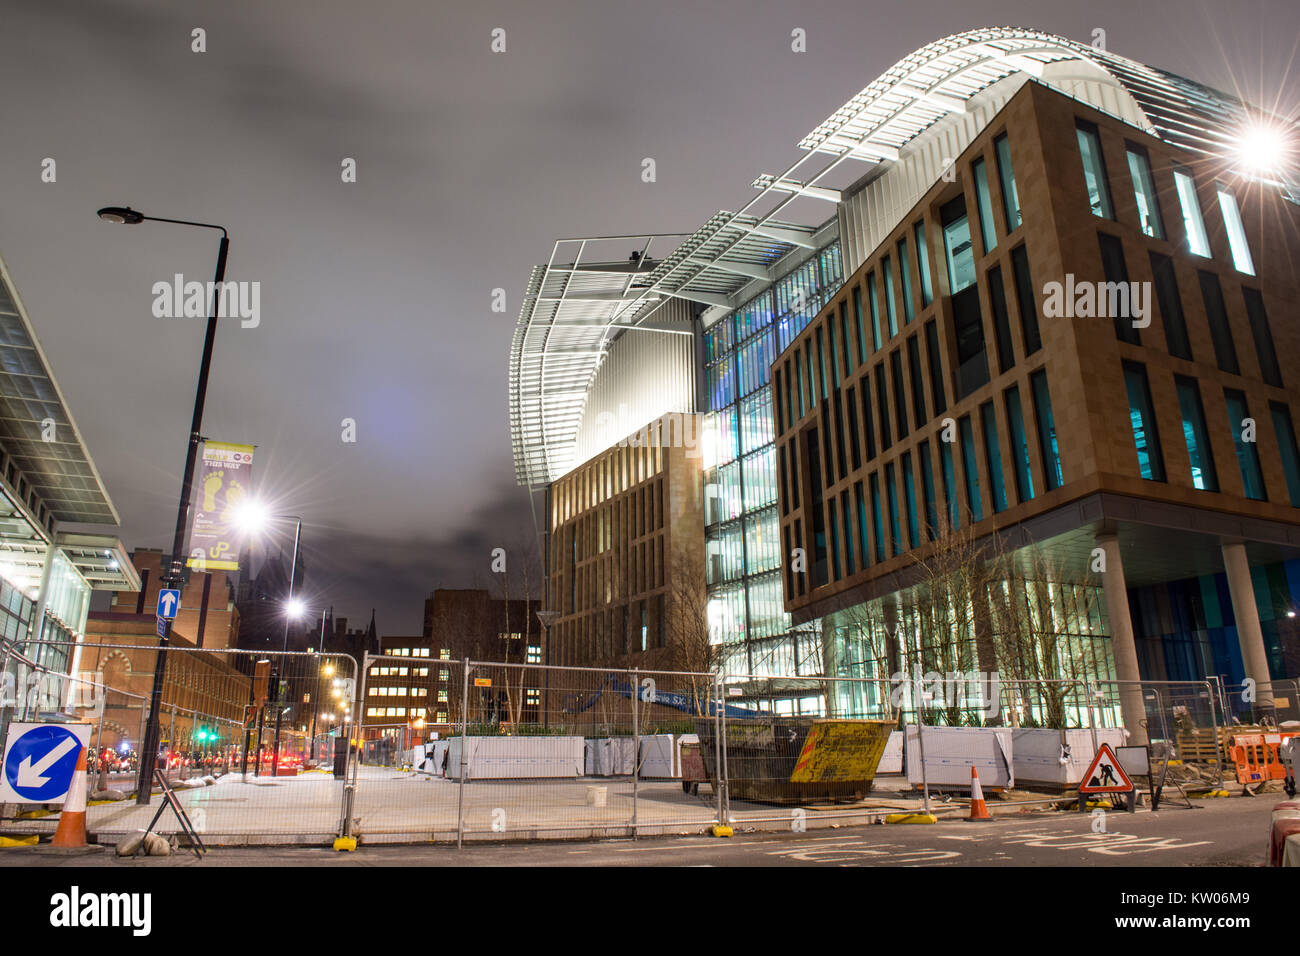 London, England, UK - Februar 1, 2016: Bau nähert sich der Fertigstellung auf der Francis Crick Institut, Europas größte biomedizinische Forschungseinrichtung, n Stockfoto